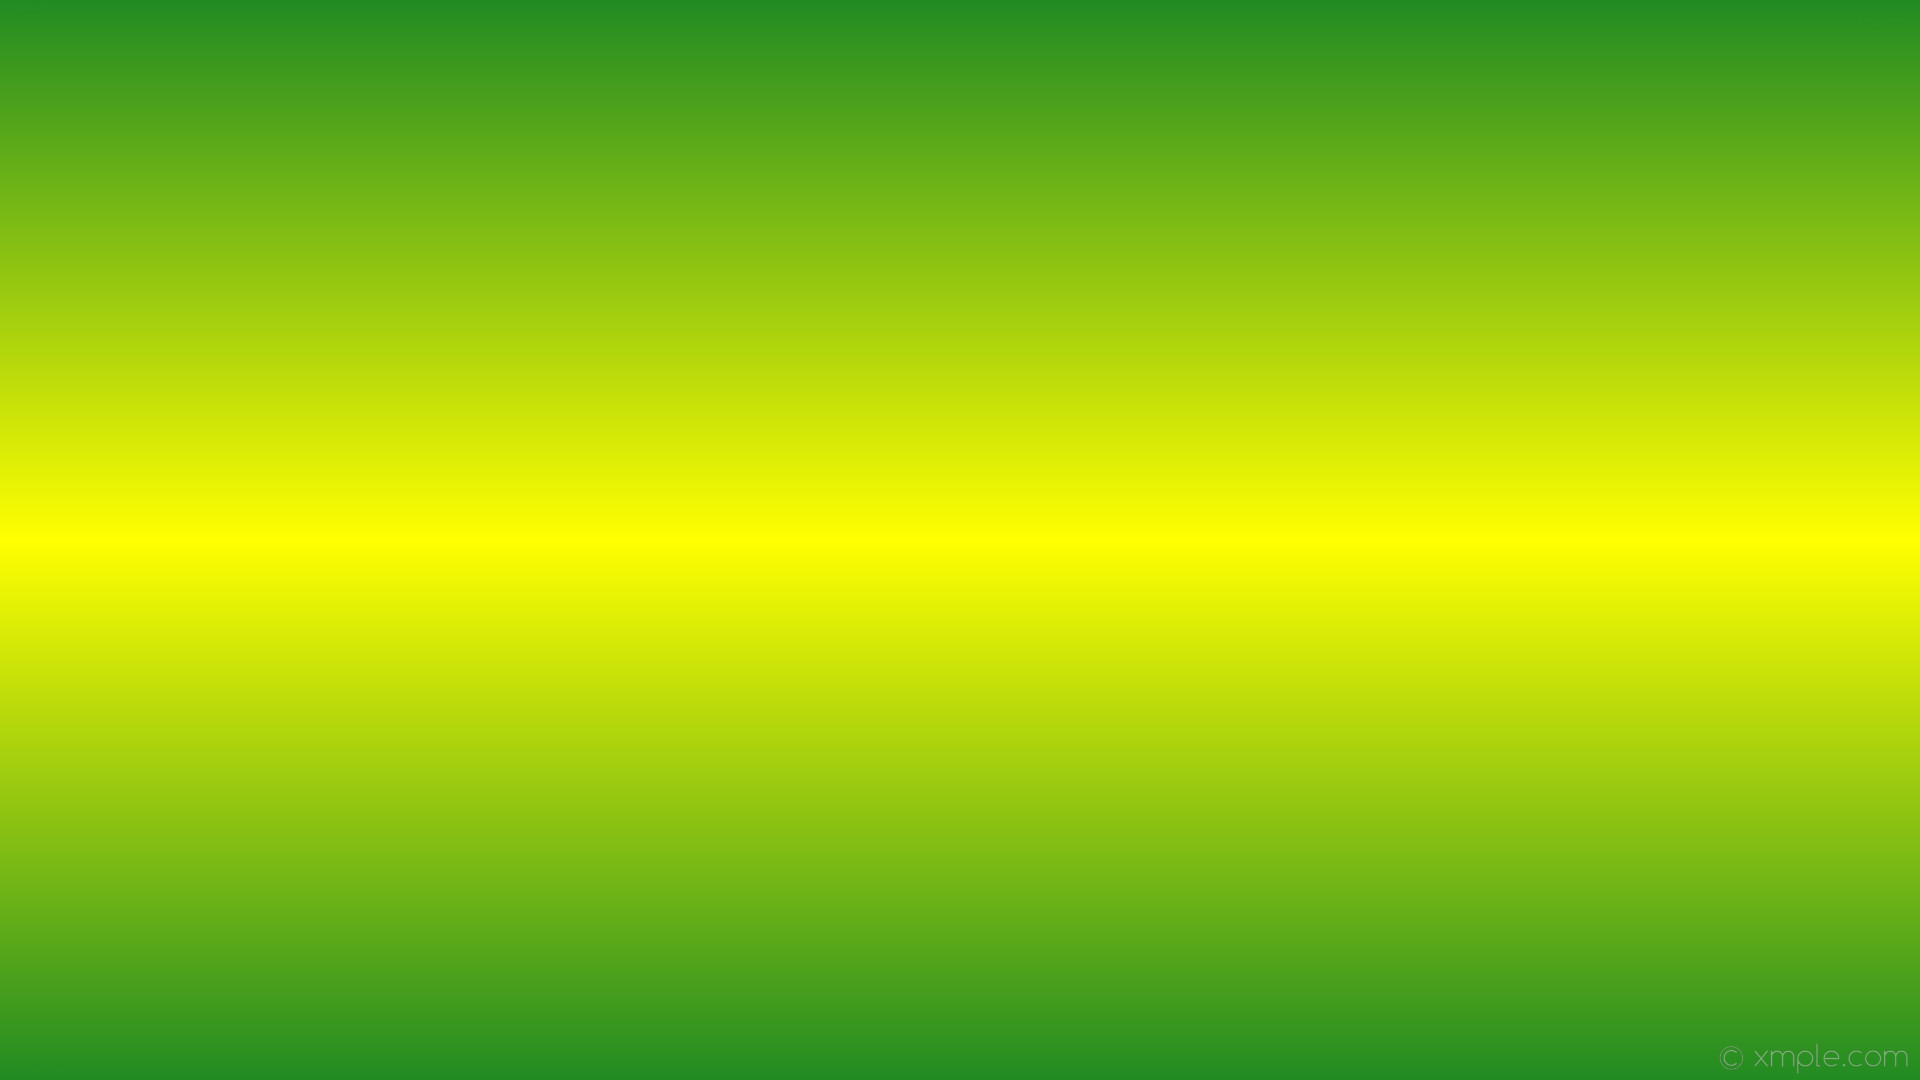 1920x1080 wallpaper linear highlight green yellow gradient forest green #228b22  #ffff00 90Â° 50%